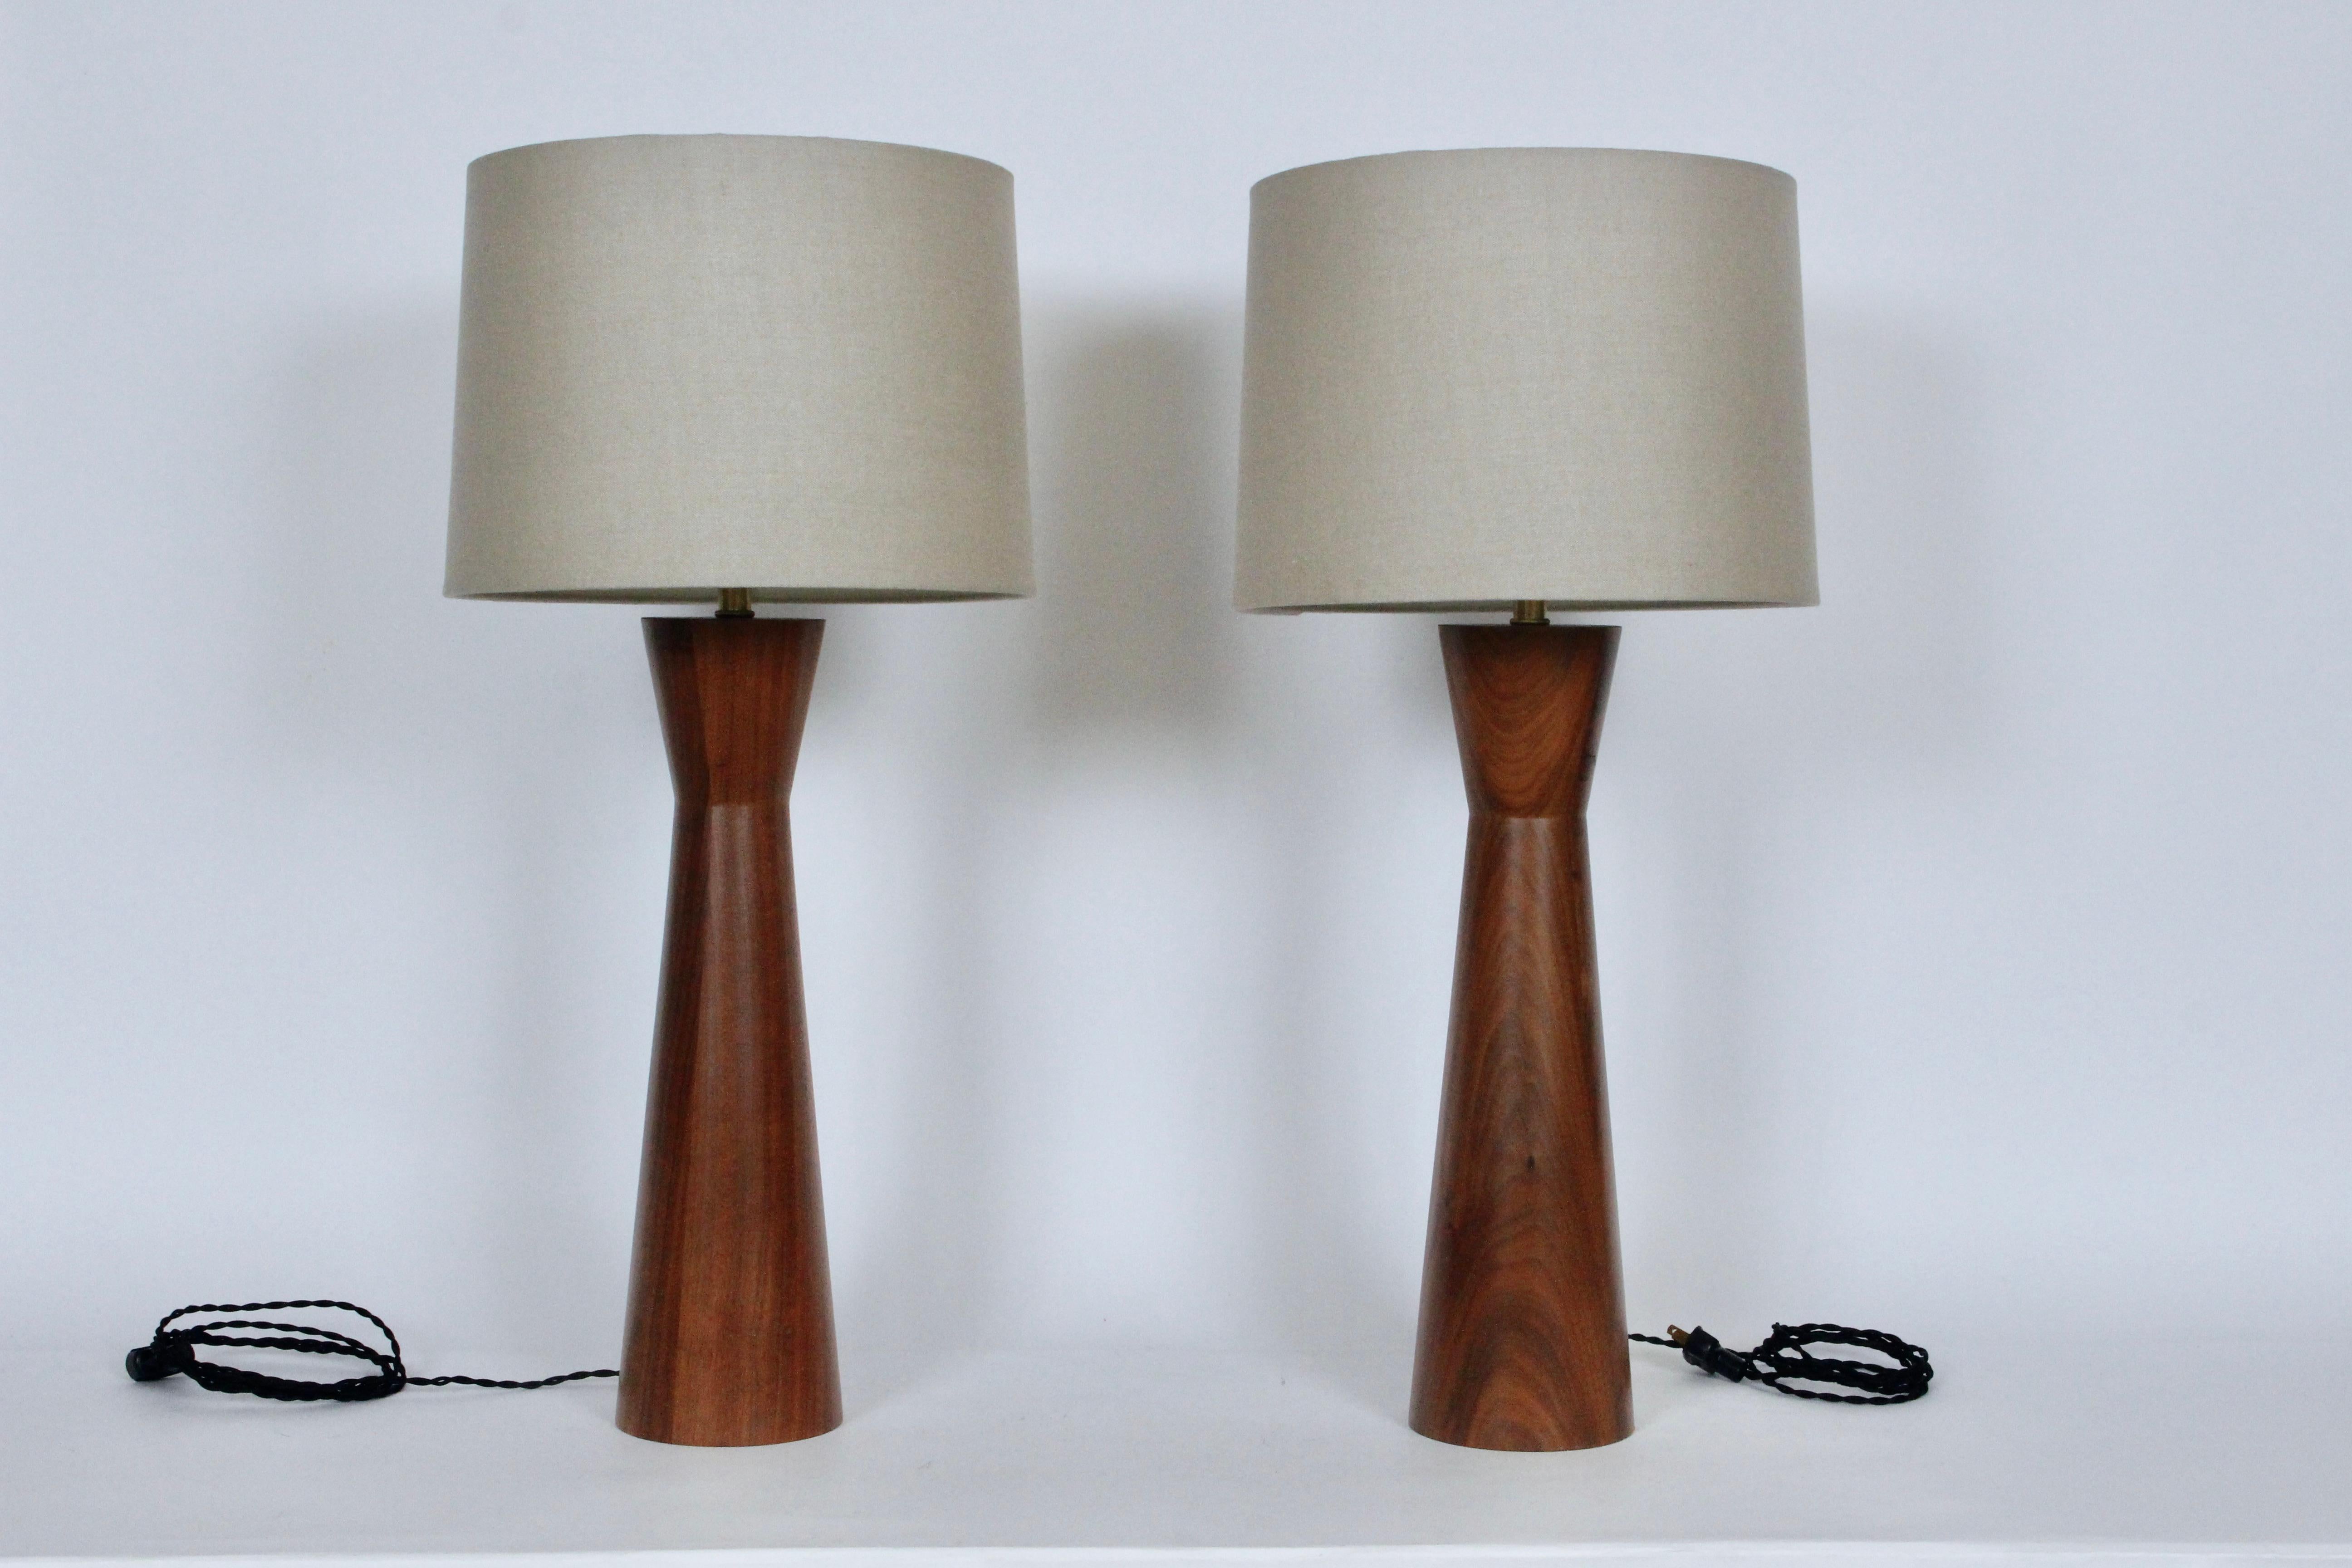 Zwei California Modern Raymond Pfennig für Zina Lamp Company Walnuss Nachttischlampen, 1960er Jahre. Sanduhrform aus gestapeltem Nussbaumholz. 22 H bis zur Oberkante der Fassung. 18H bis Oberkante Nussbaum. Die abgebildeten Lampenschirme sind nur